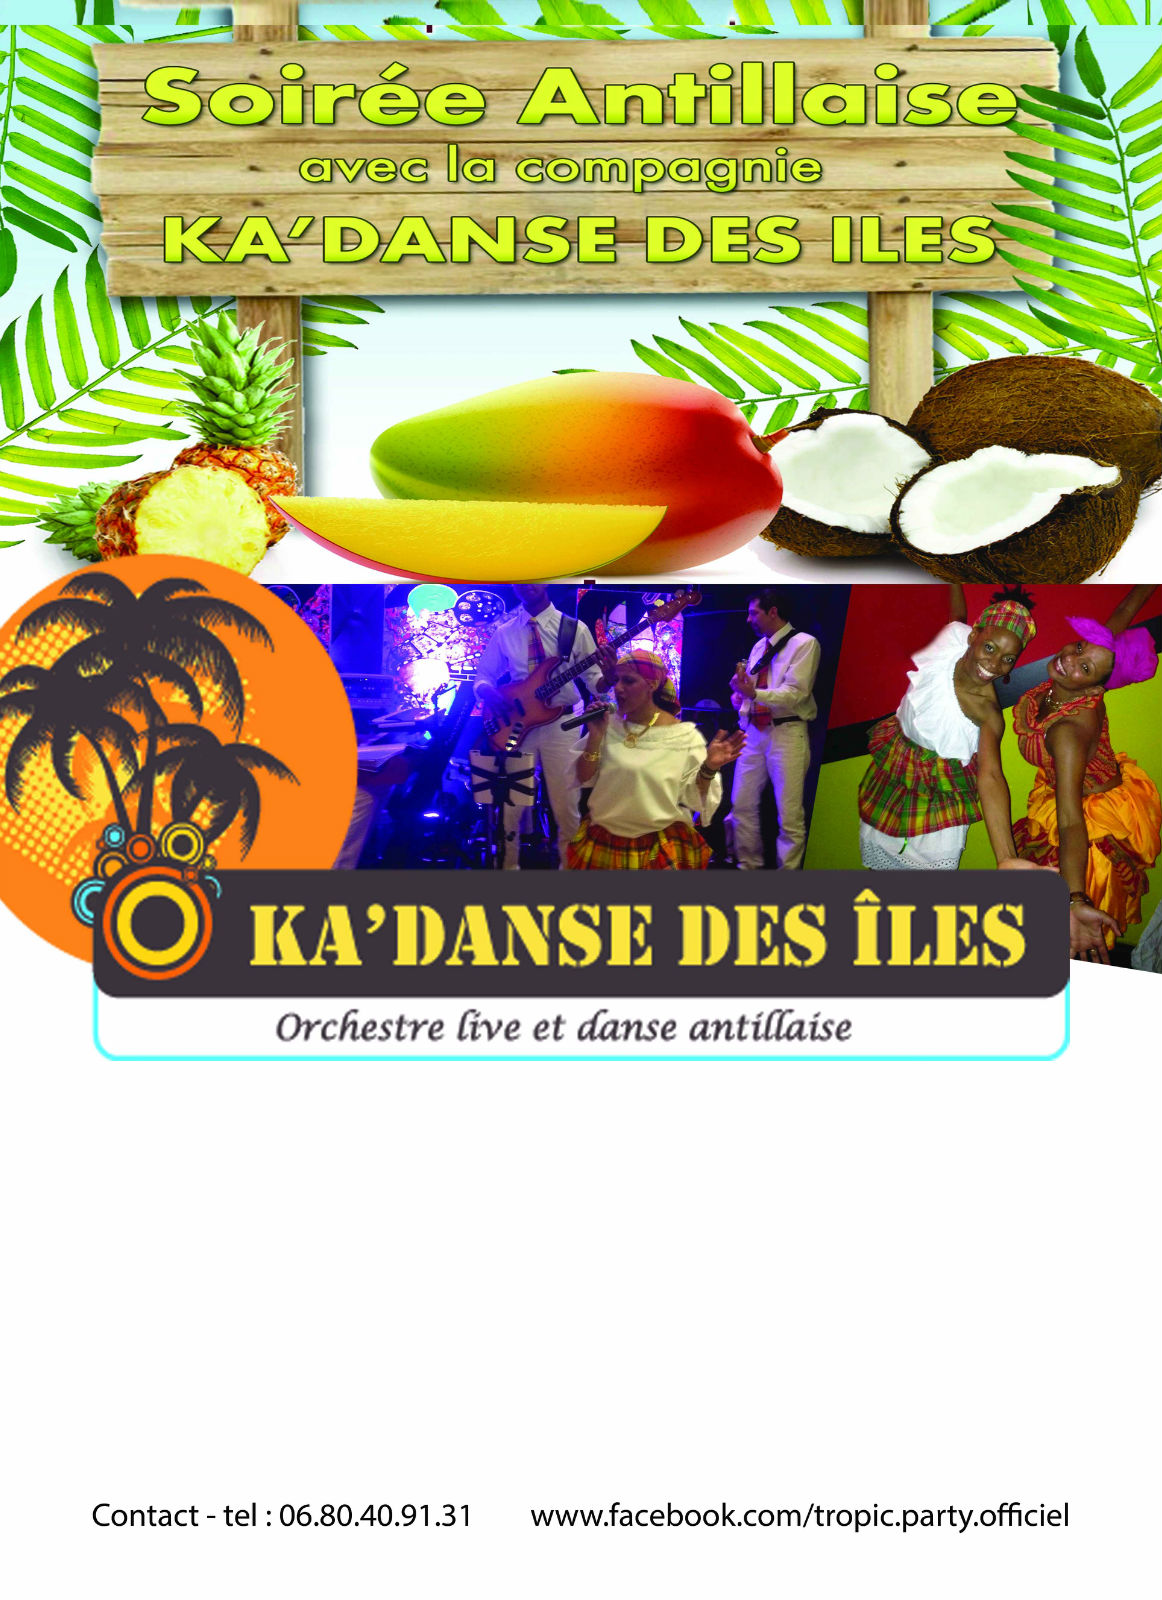 Compagnie "KA'DANSE DES ILES", spectacles et animations des îles, Antillaises, Créoles, Tropicales, orchestre, groupe, danseuses, DJ, percussions, ...